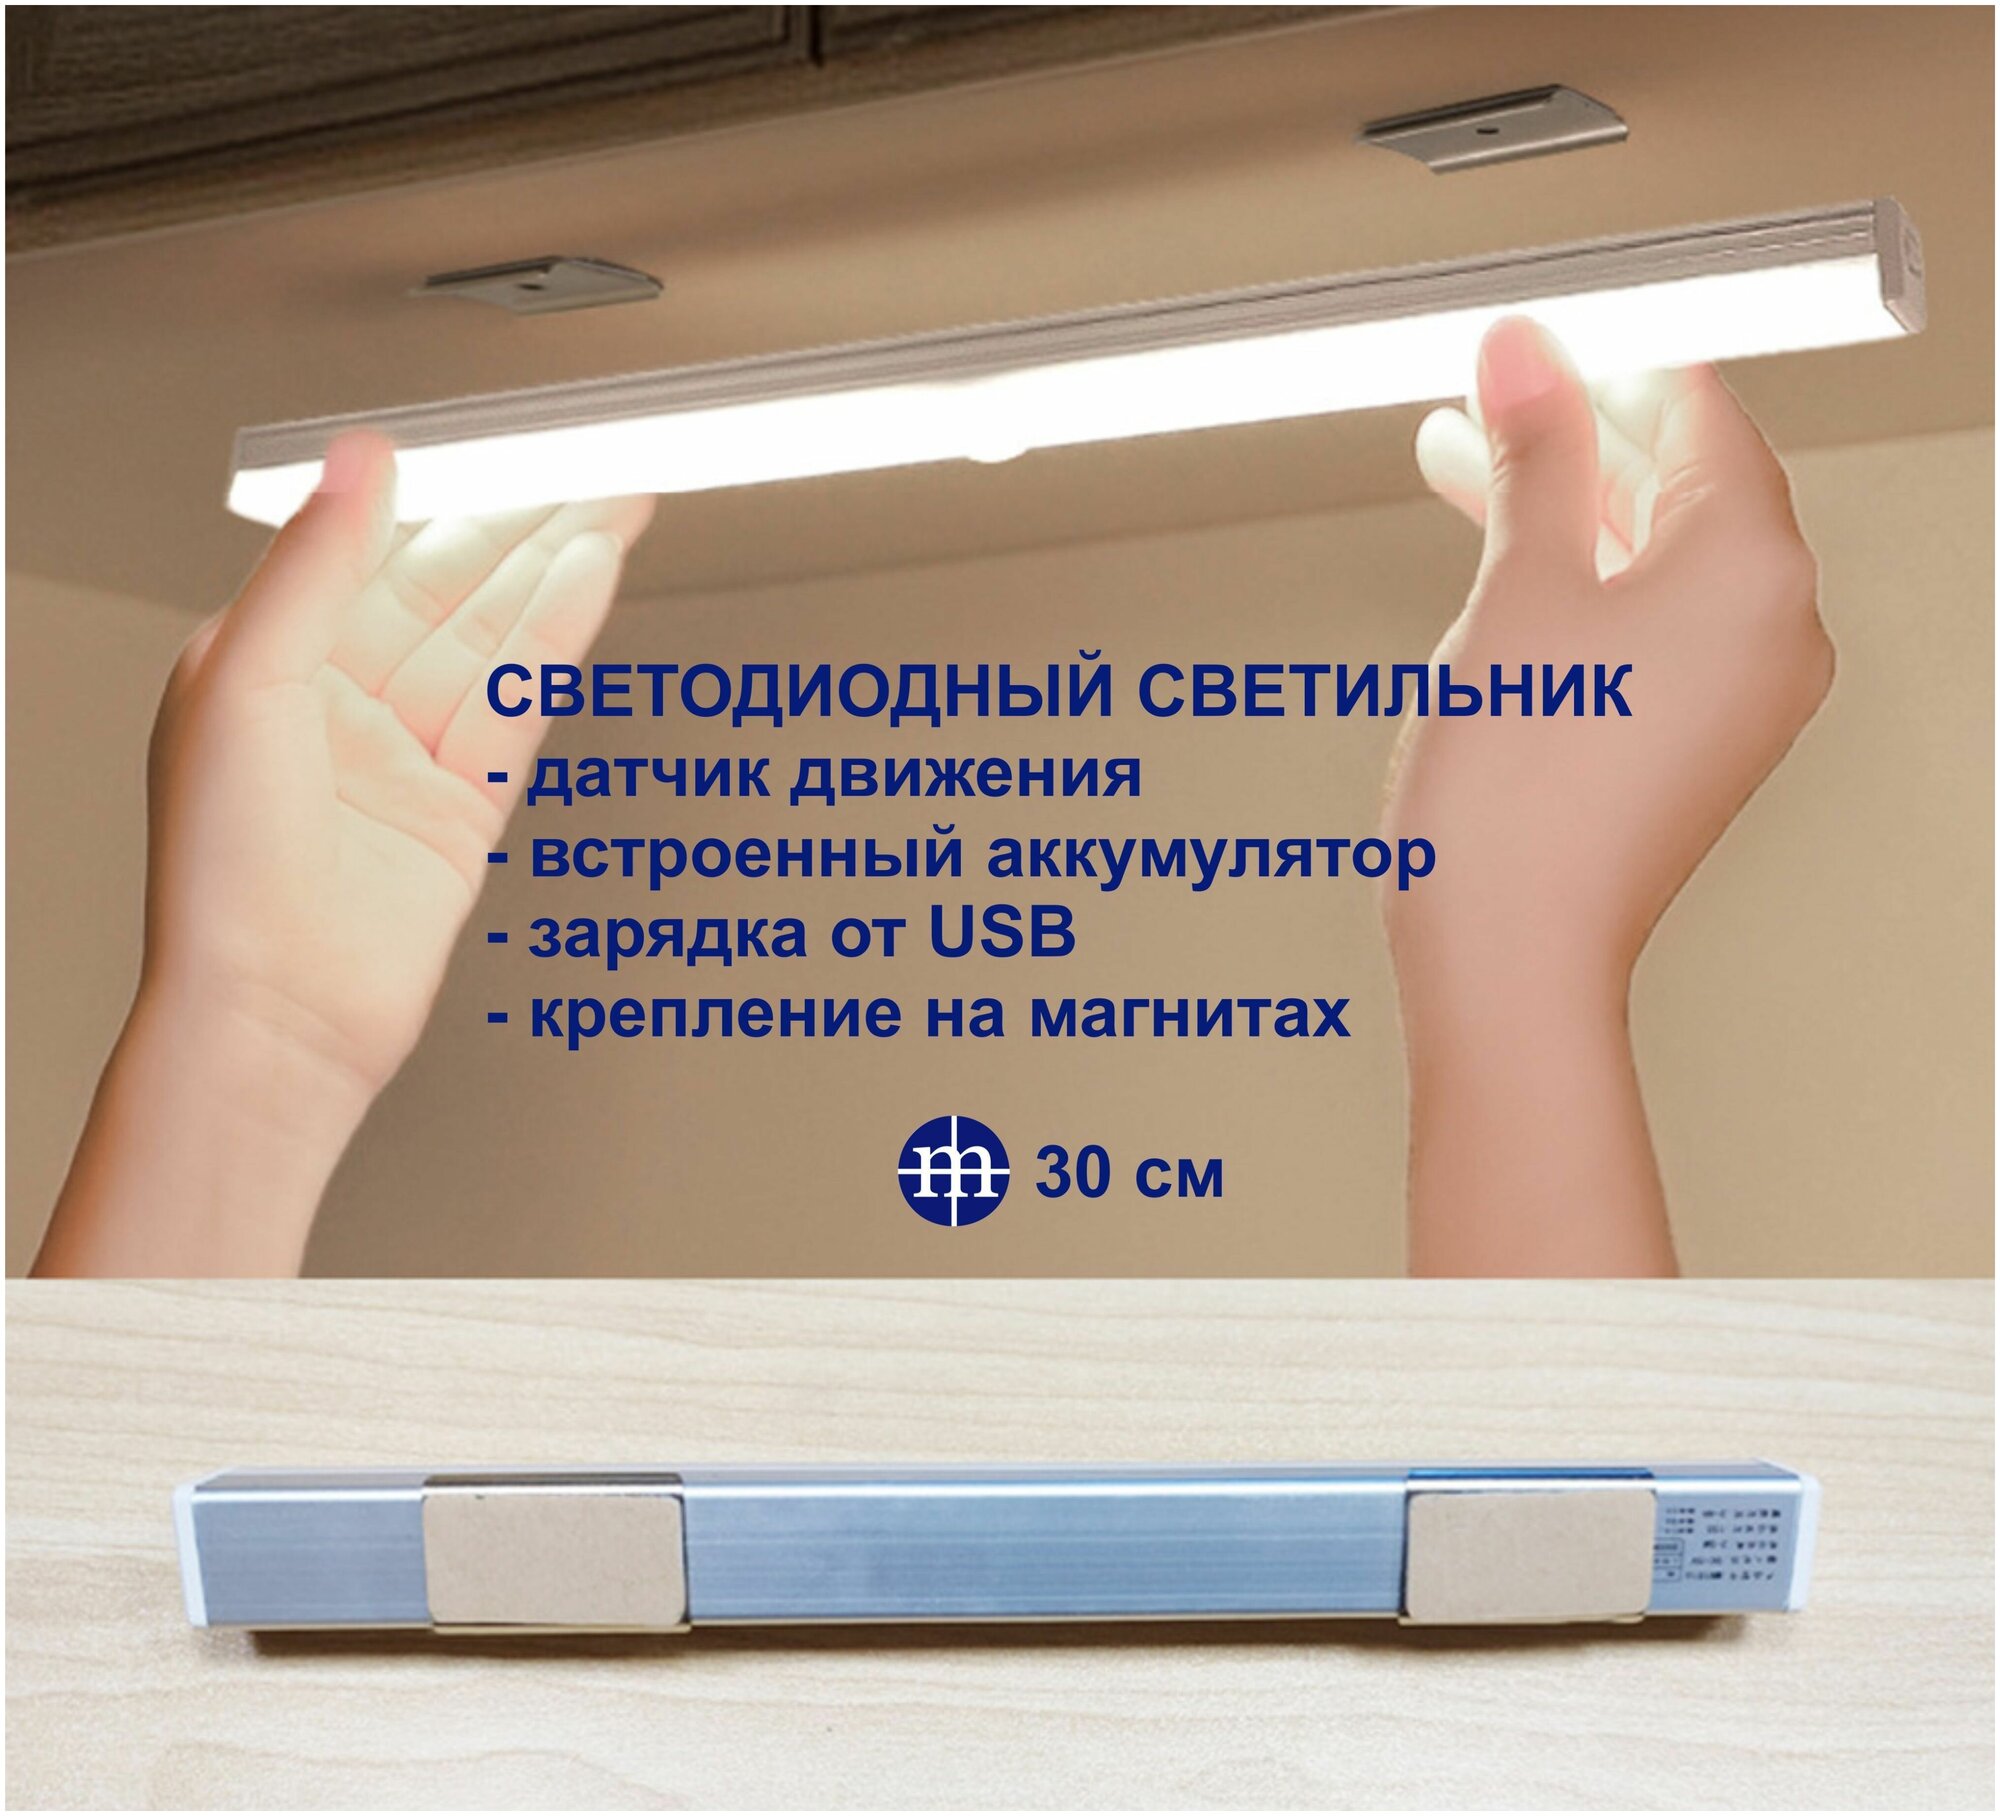 Светодиодный светильник MIKRON СВ23-30 с датчиком движения для шкафа кухни прихожей гаража ( длина 30см )